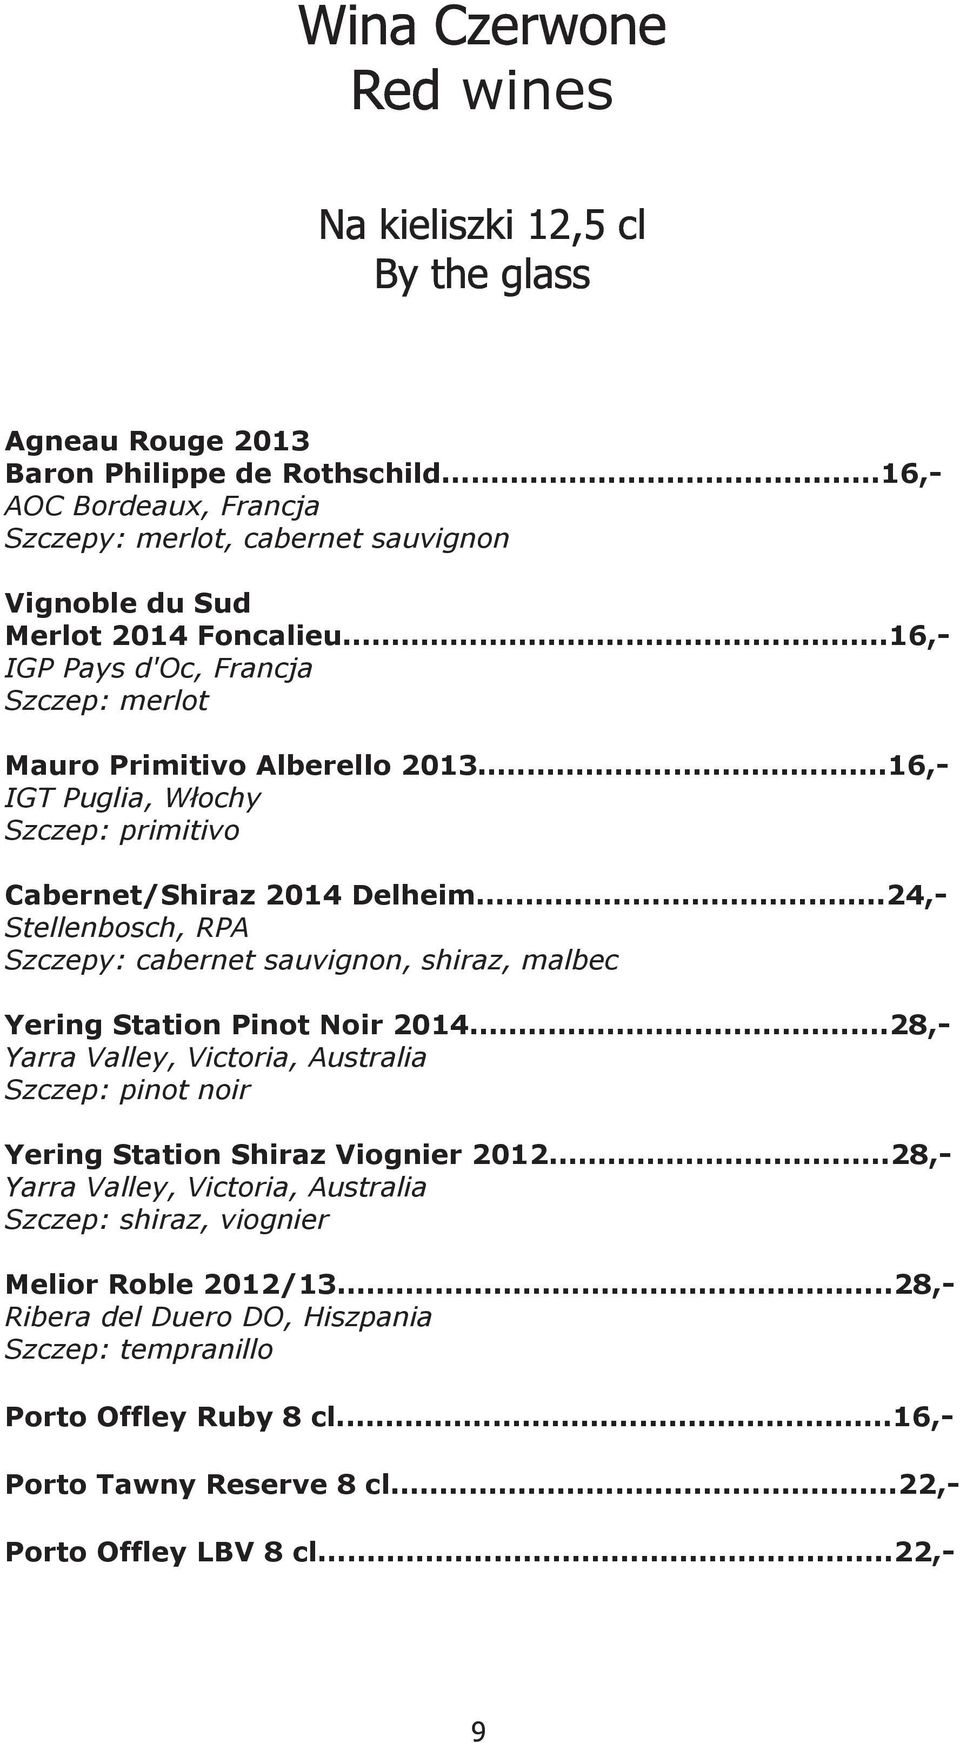 ..16, IGT Puglia, Włochy Szczep: primitivo Cabernet/Shiraz 2014 Delheim...24, Stellenbosch, RPA Szczepy: cabernet sauvignon, shiraz, malbec Yering Station Pinot Noir 2014.